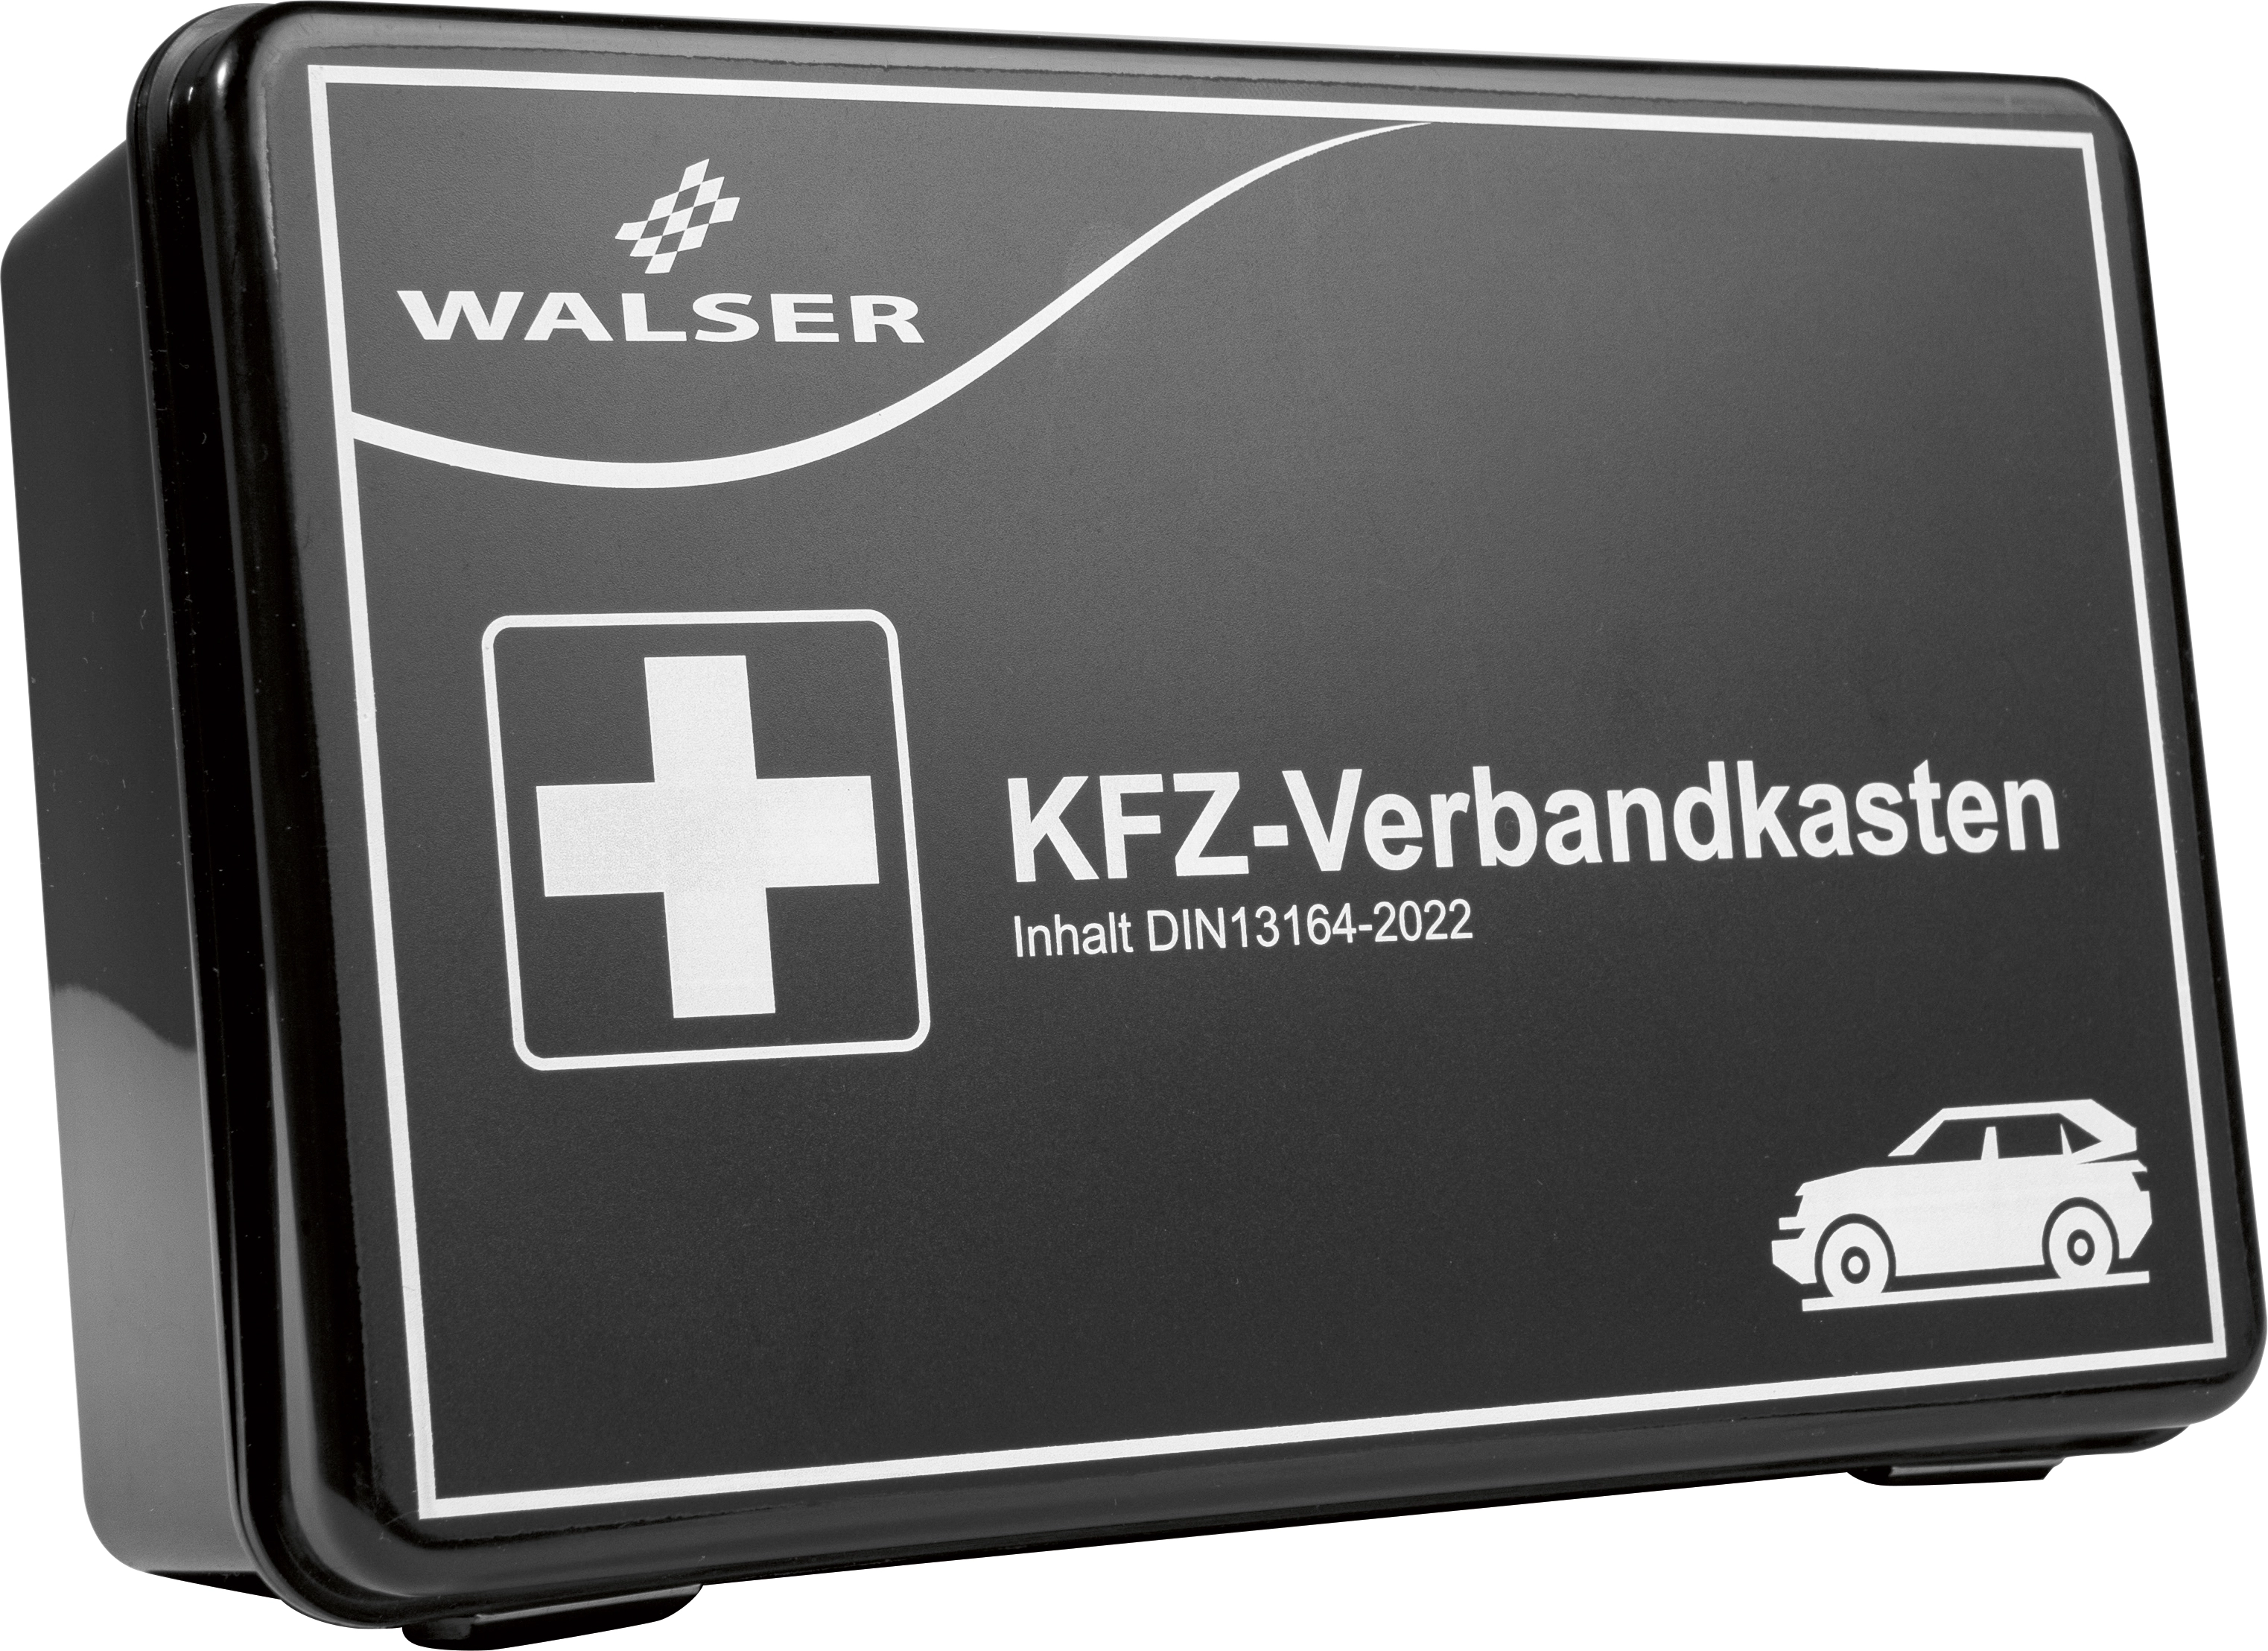 Walser Kfz-Verbandkasten DIN13164-2022 kaufen bei OBI